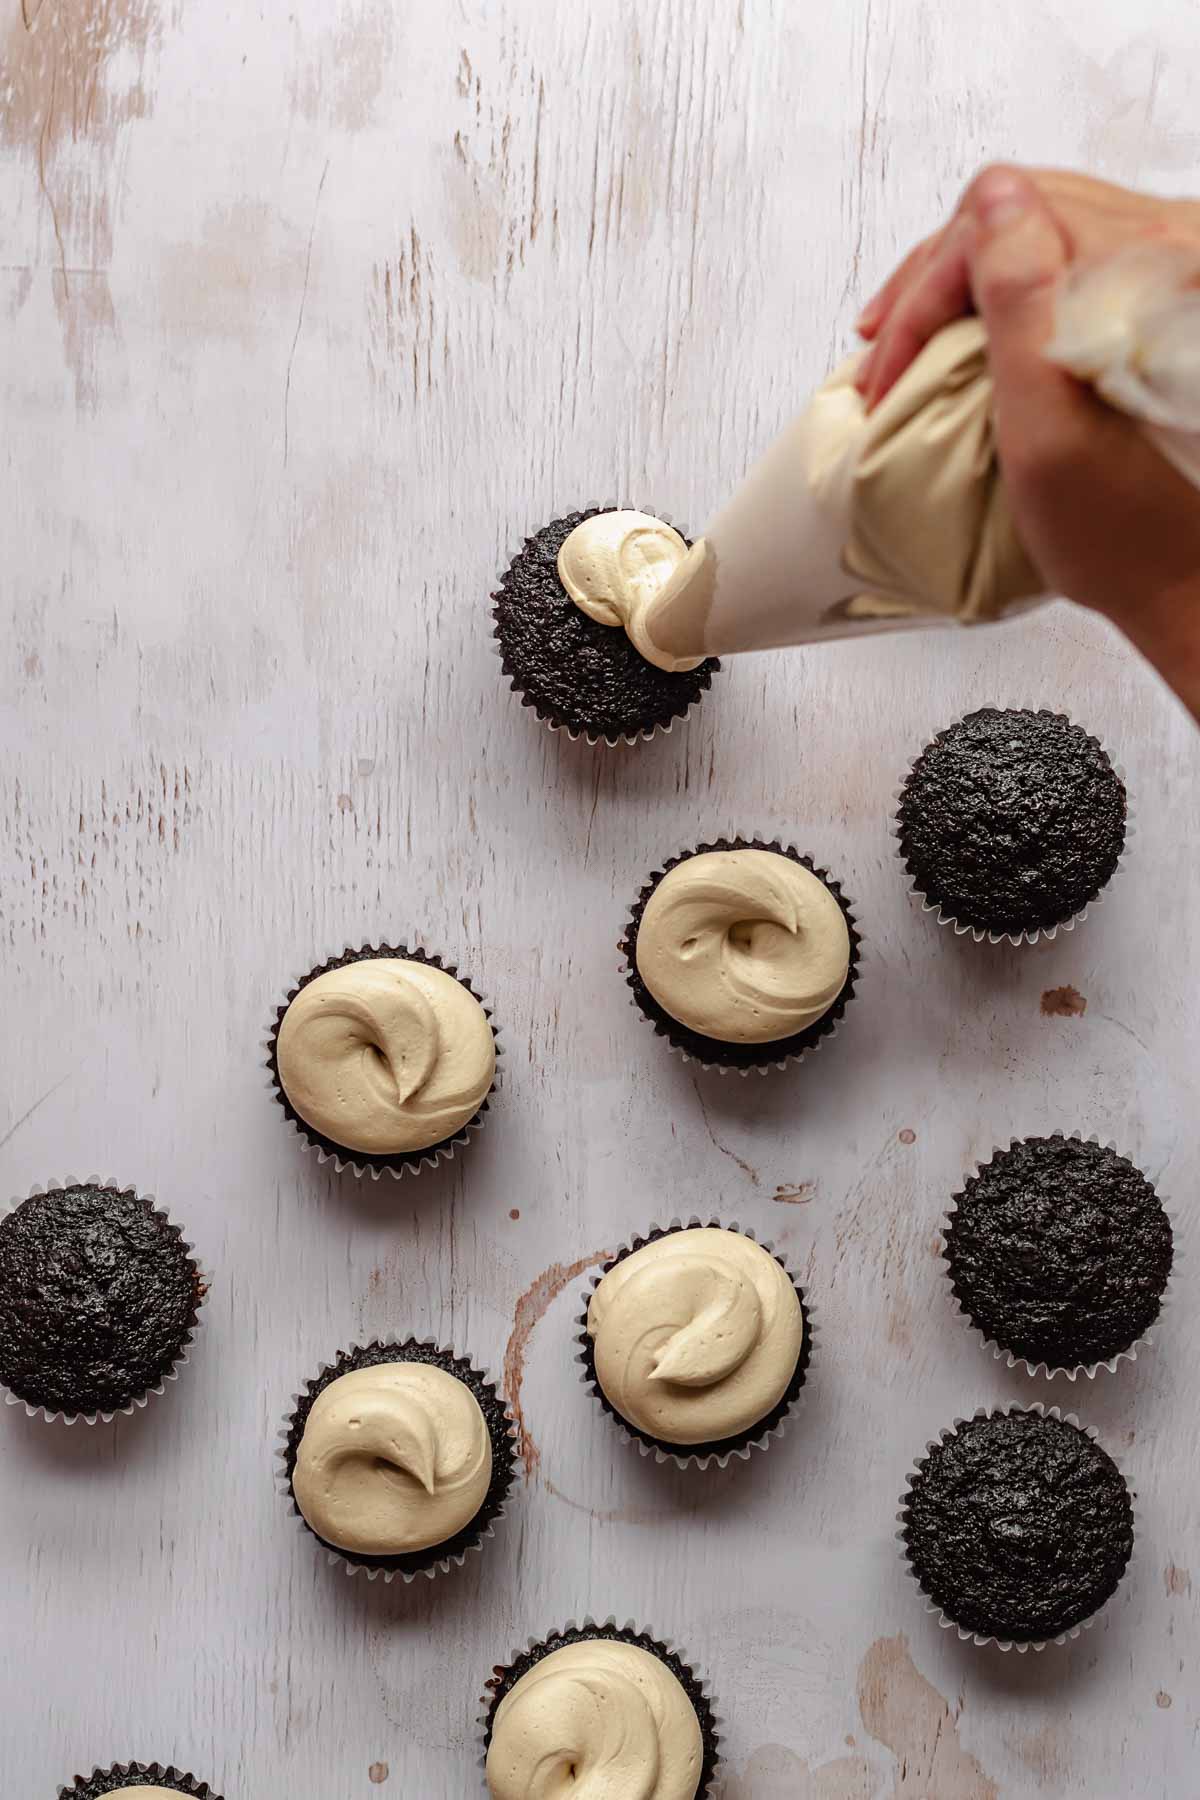 A hand pipes espresso buttercream onto chocolate cupcakes.